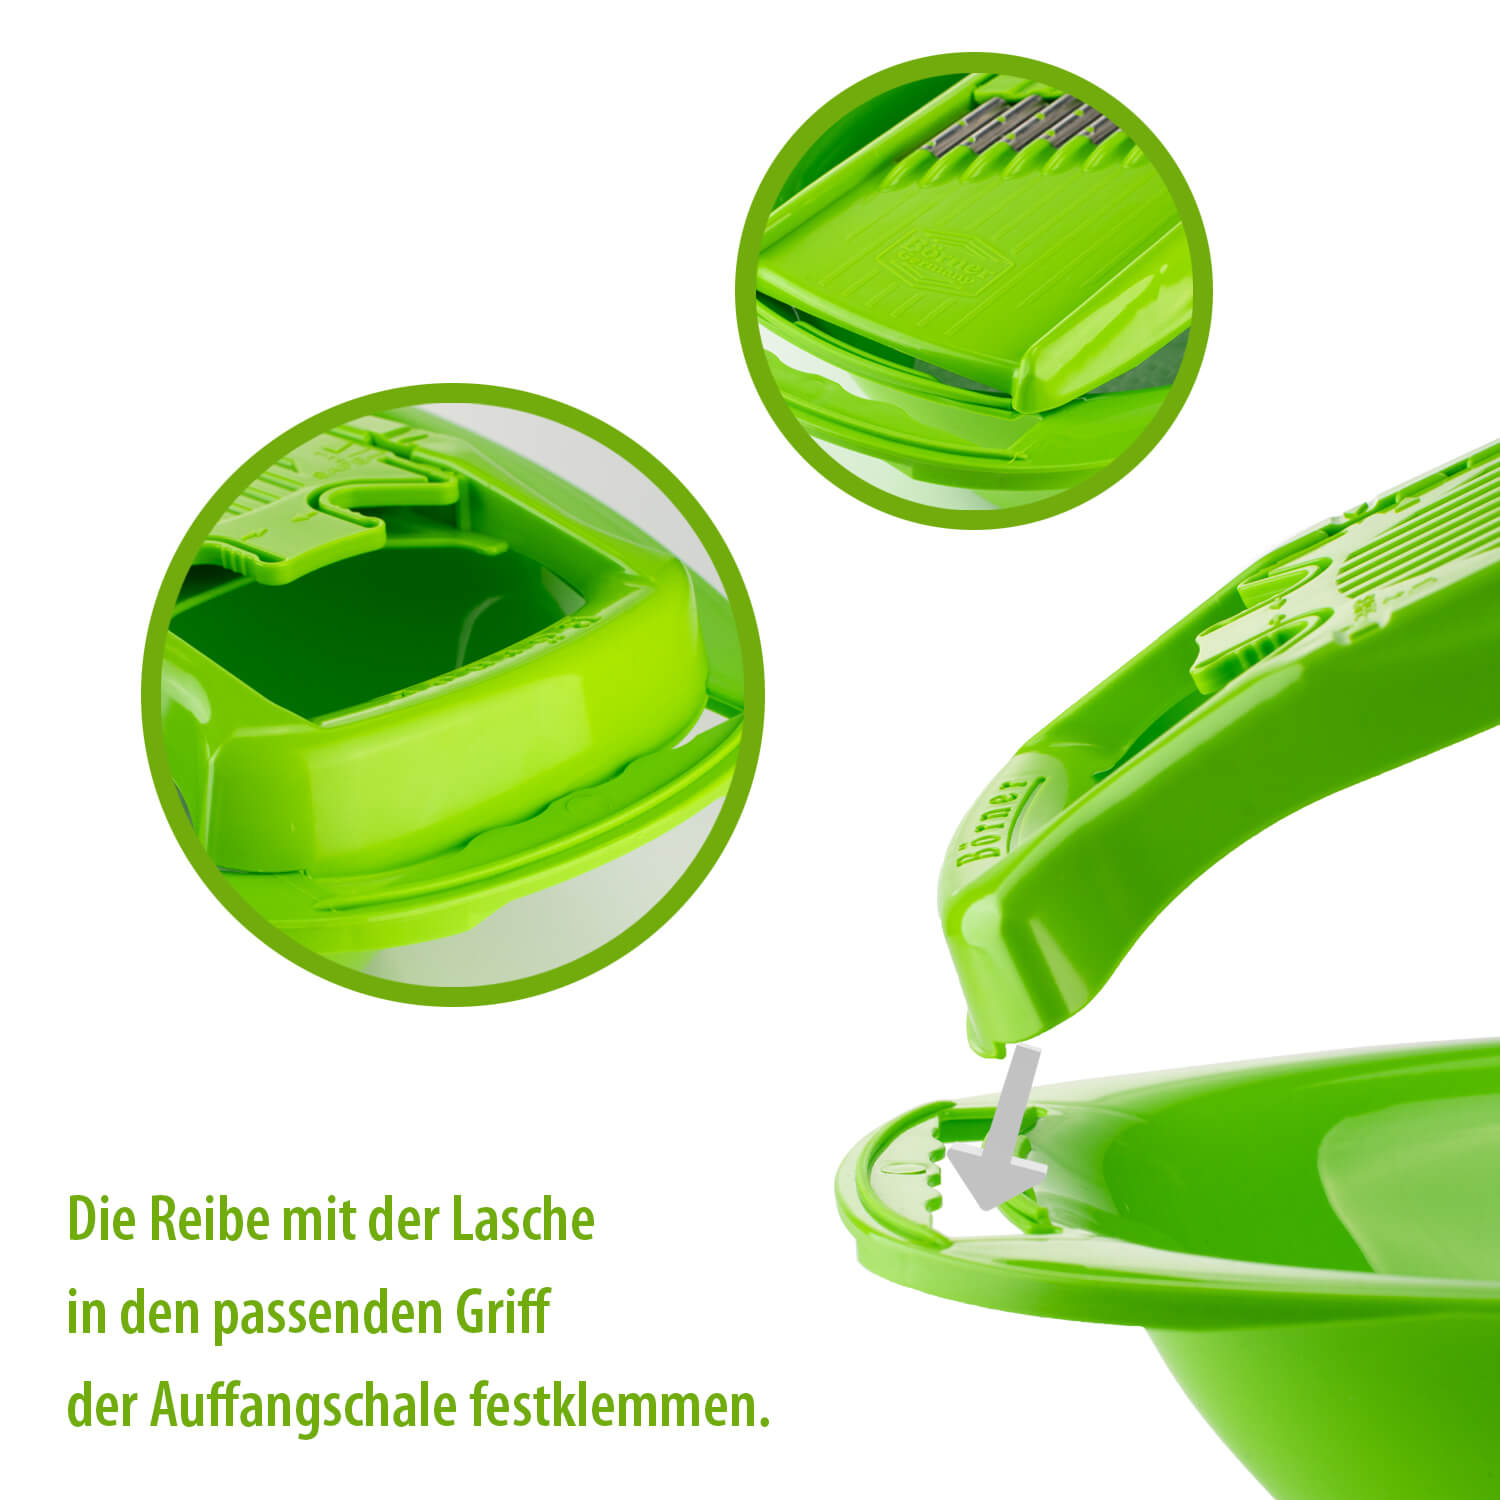 Овална ваничка за ренде Бьорнер V5 - Зелен